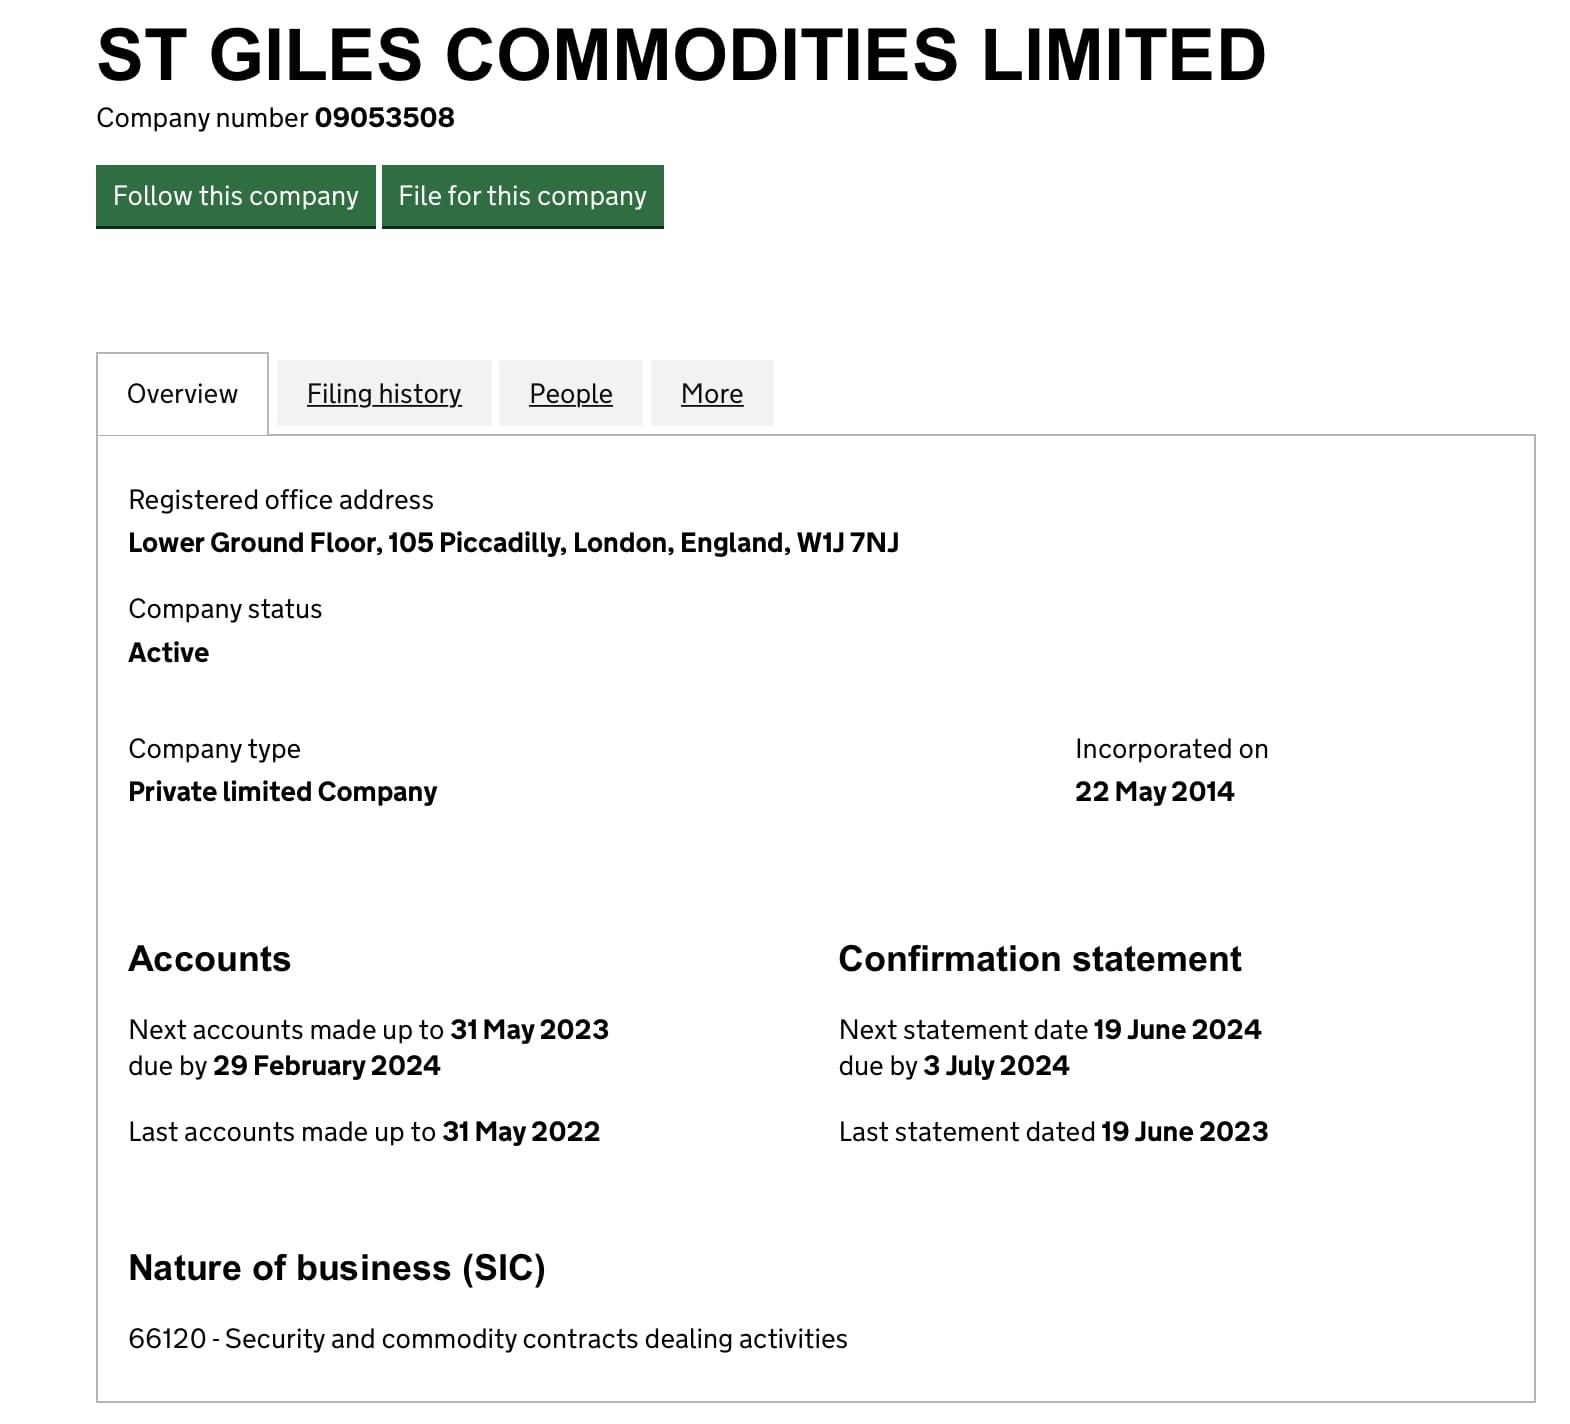 St Giles Commodities Limited: отзывы клиентов о компании в 2023